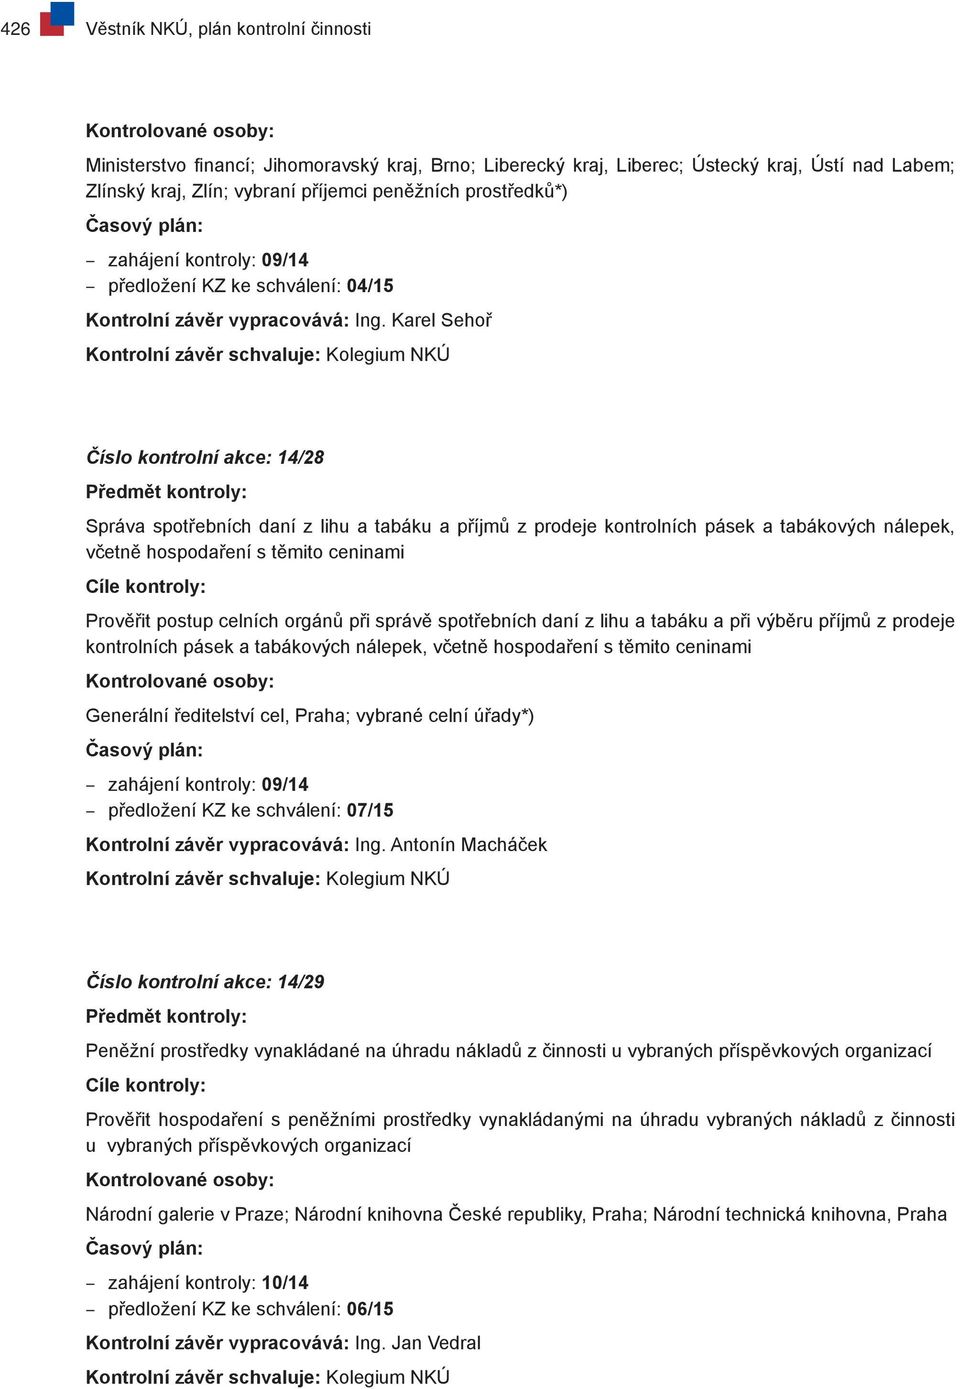 Karel Sehoř Číslo kontrolní akce: 14/28 Správa spotřebních daní z lihu a tabáku a příjmů z prodeje kontrolních pásek a tabákových nálepek, včetně hospodaření s těmito ceninami Prověřit postup celních